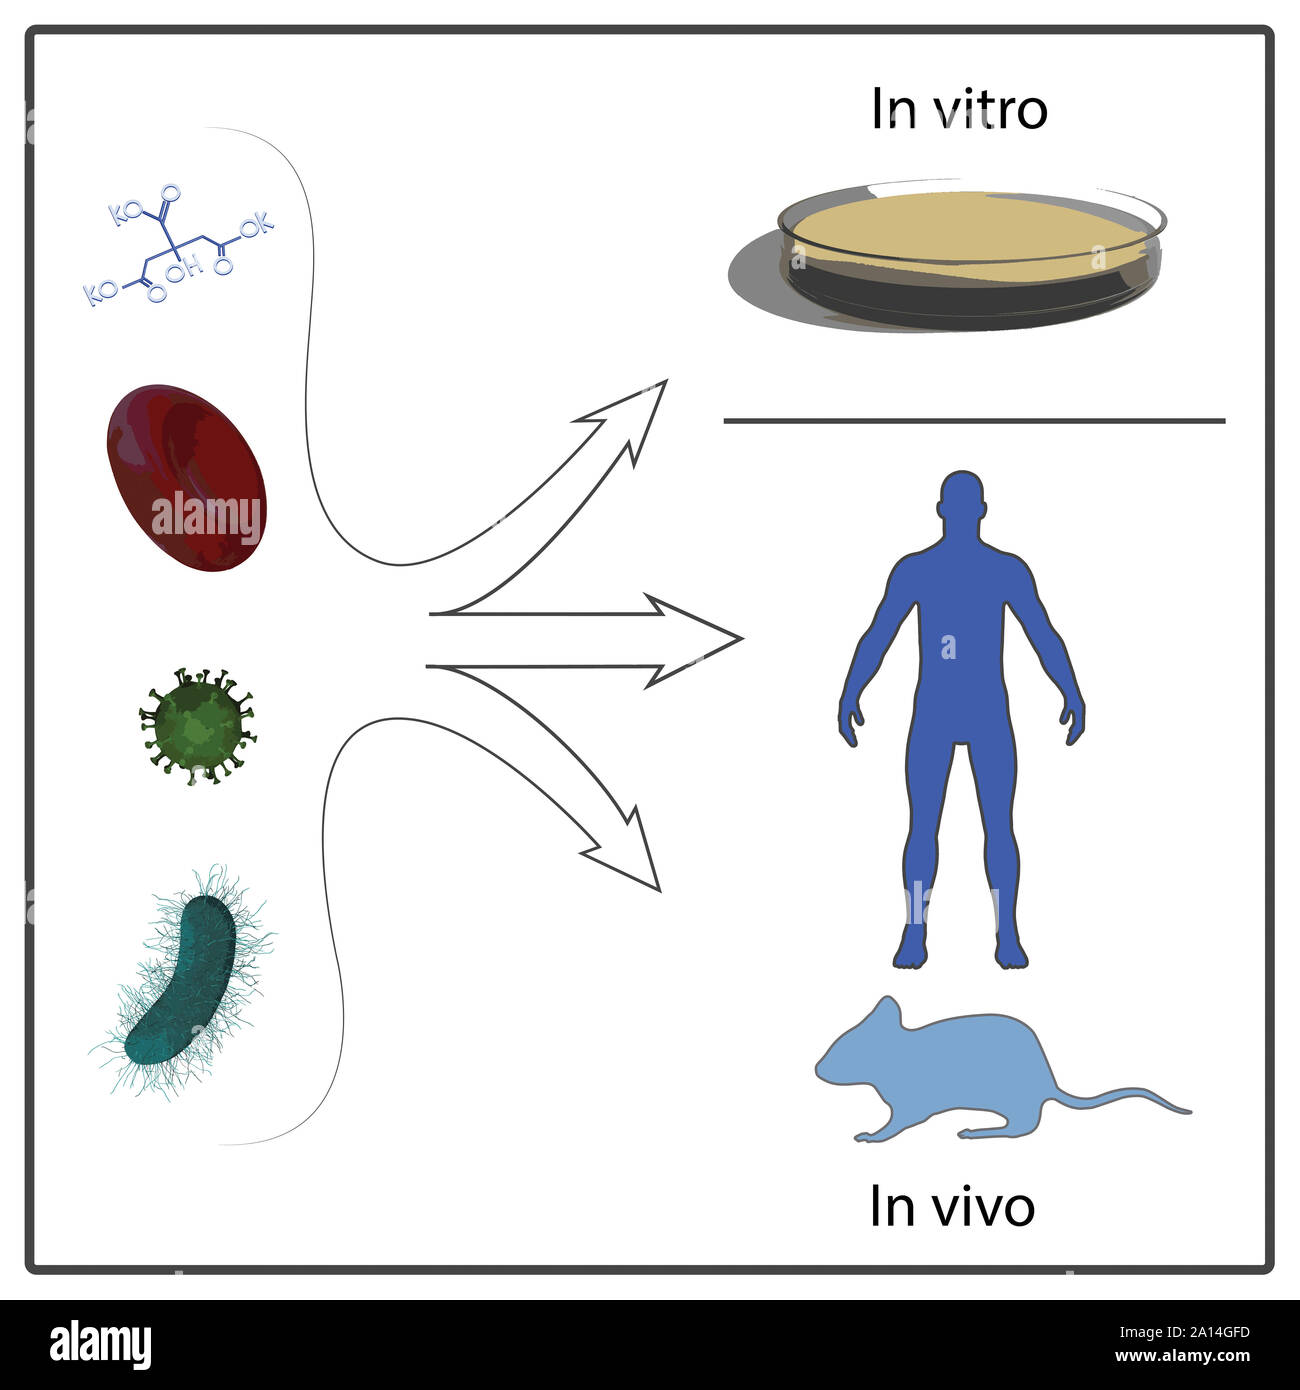 A diagram depicting in vivo and in vitro testing.